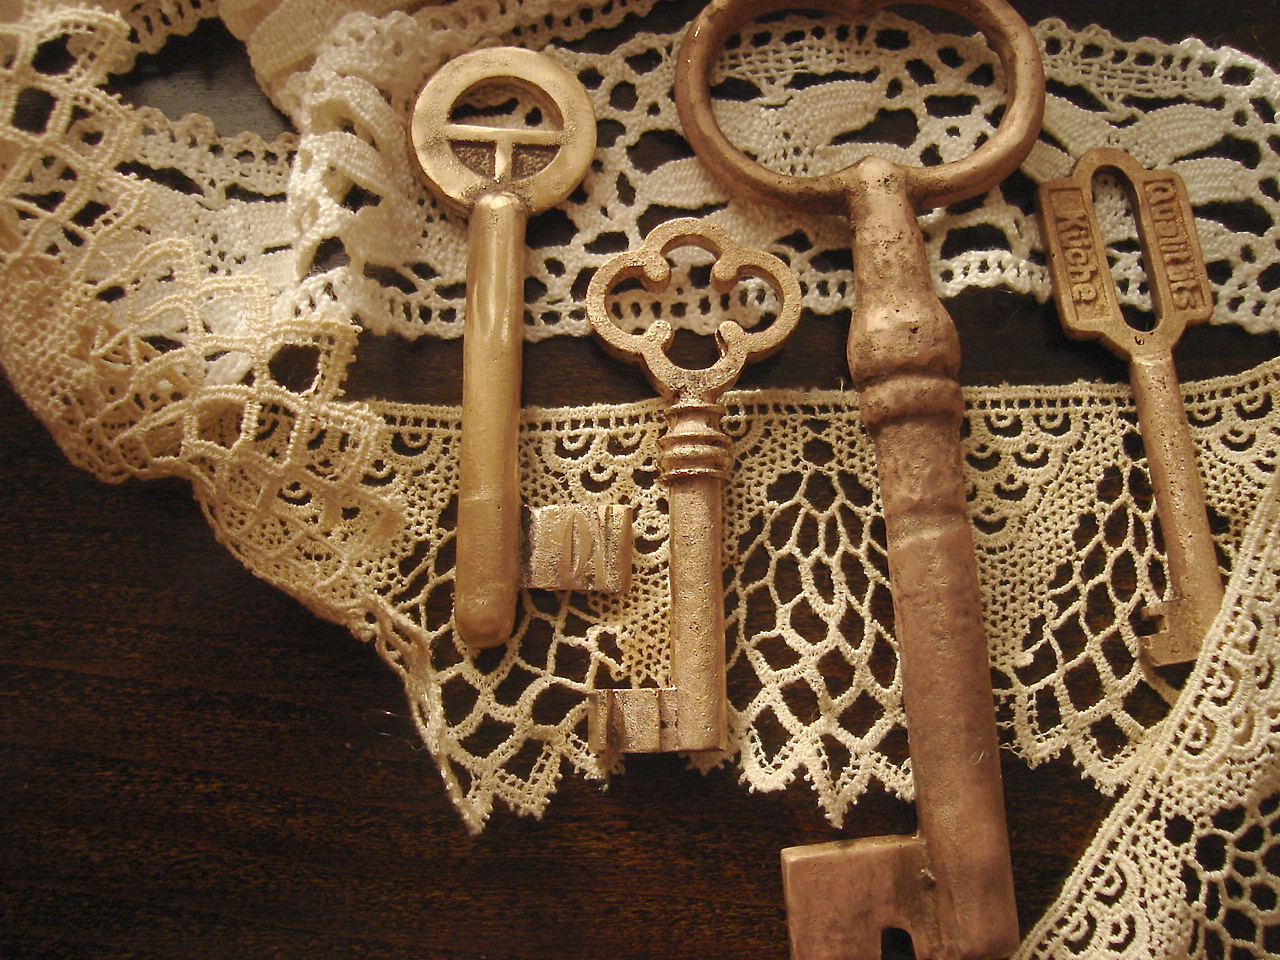 Women's keys